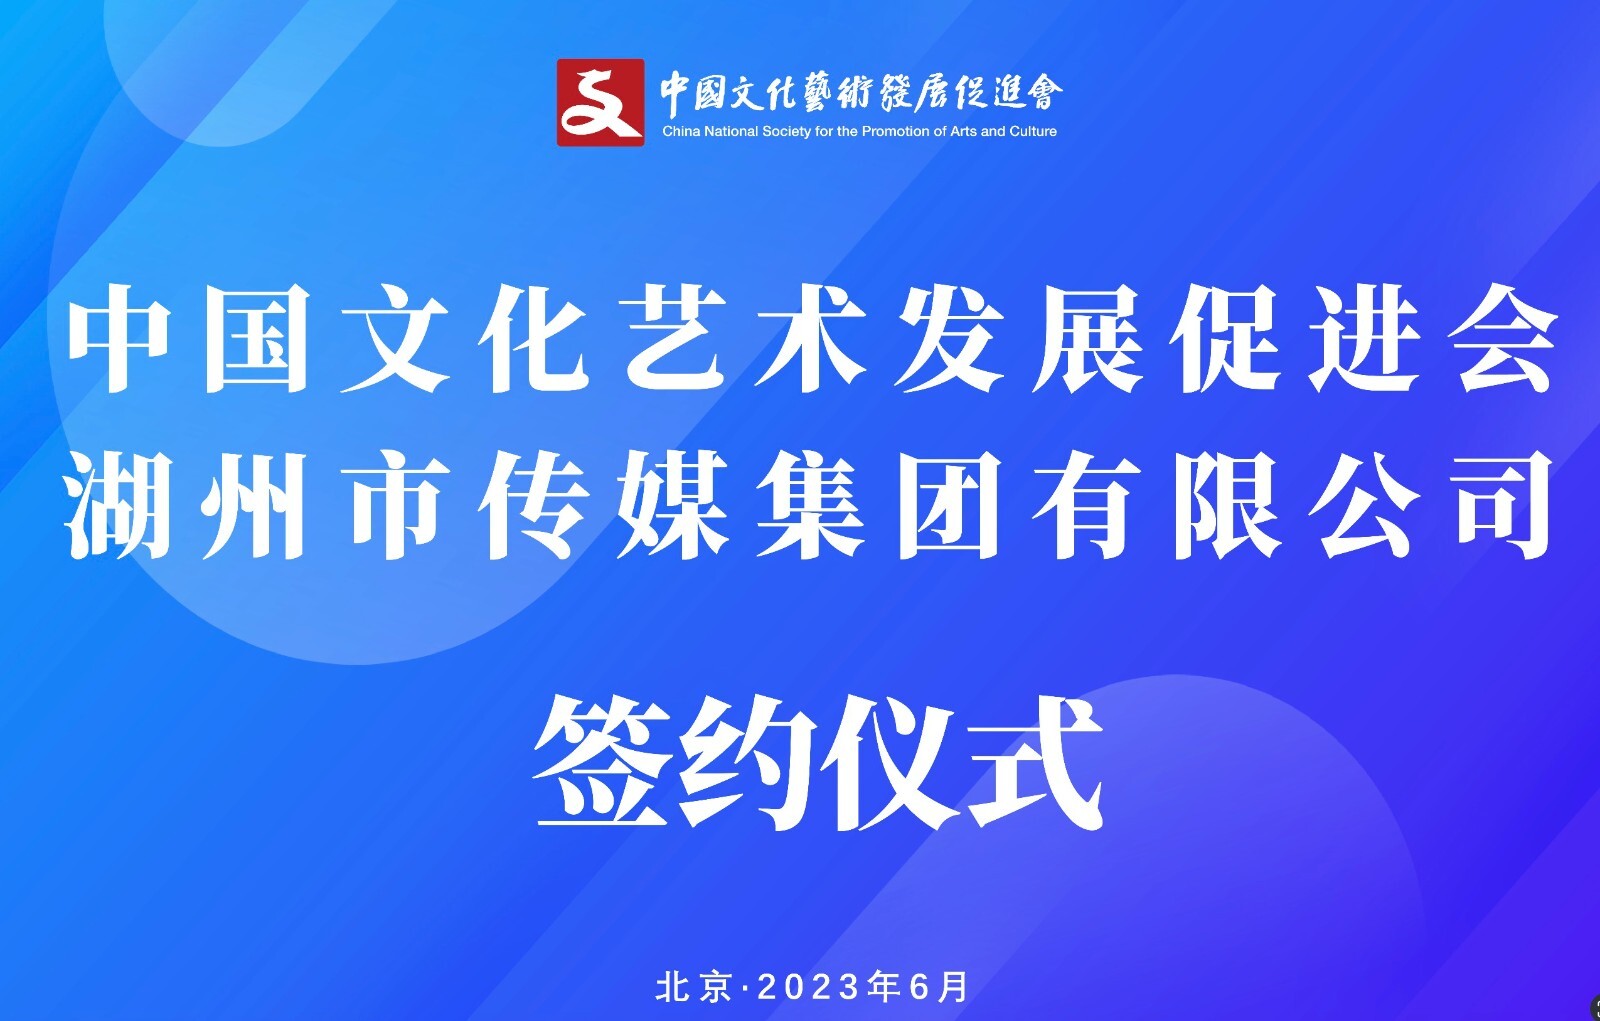 中国文化艺术发展促进会与湖州市传媒集团有限公司 战略合作签约仪式